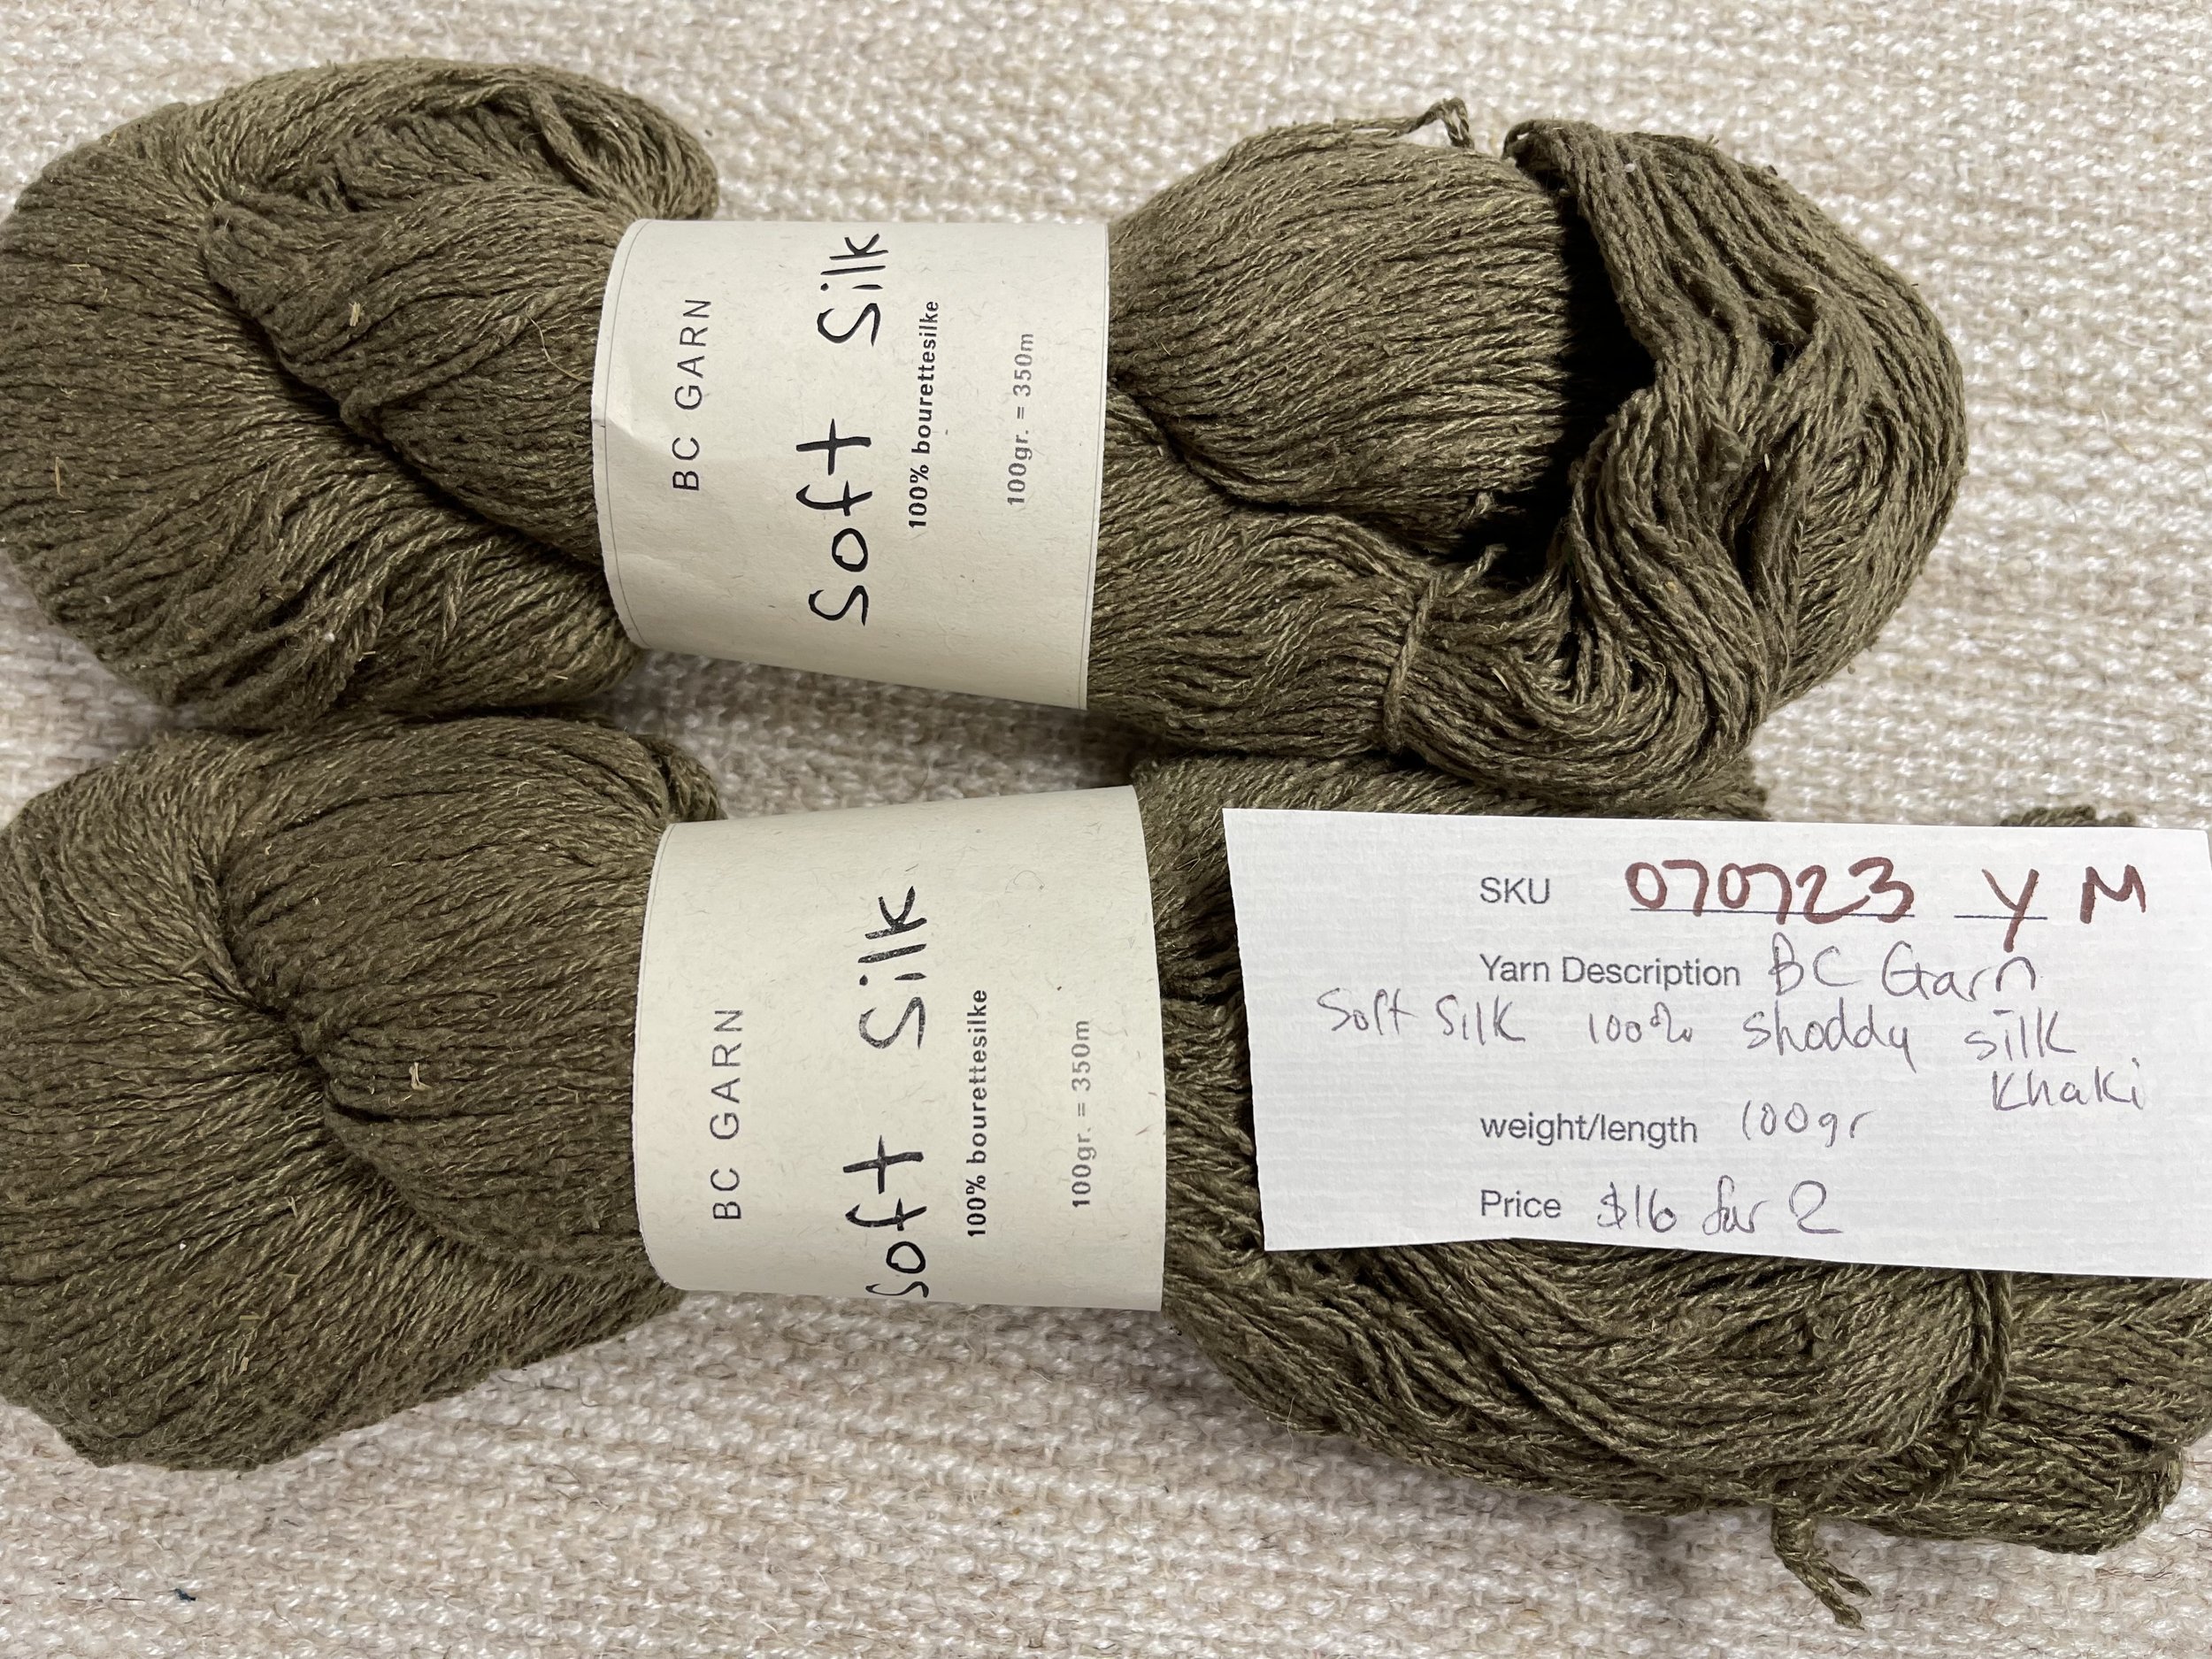 070723-Y-M BC Garn Soft Silk, khaki, g, lot of 2 — FabMo